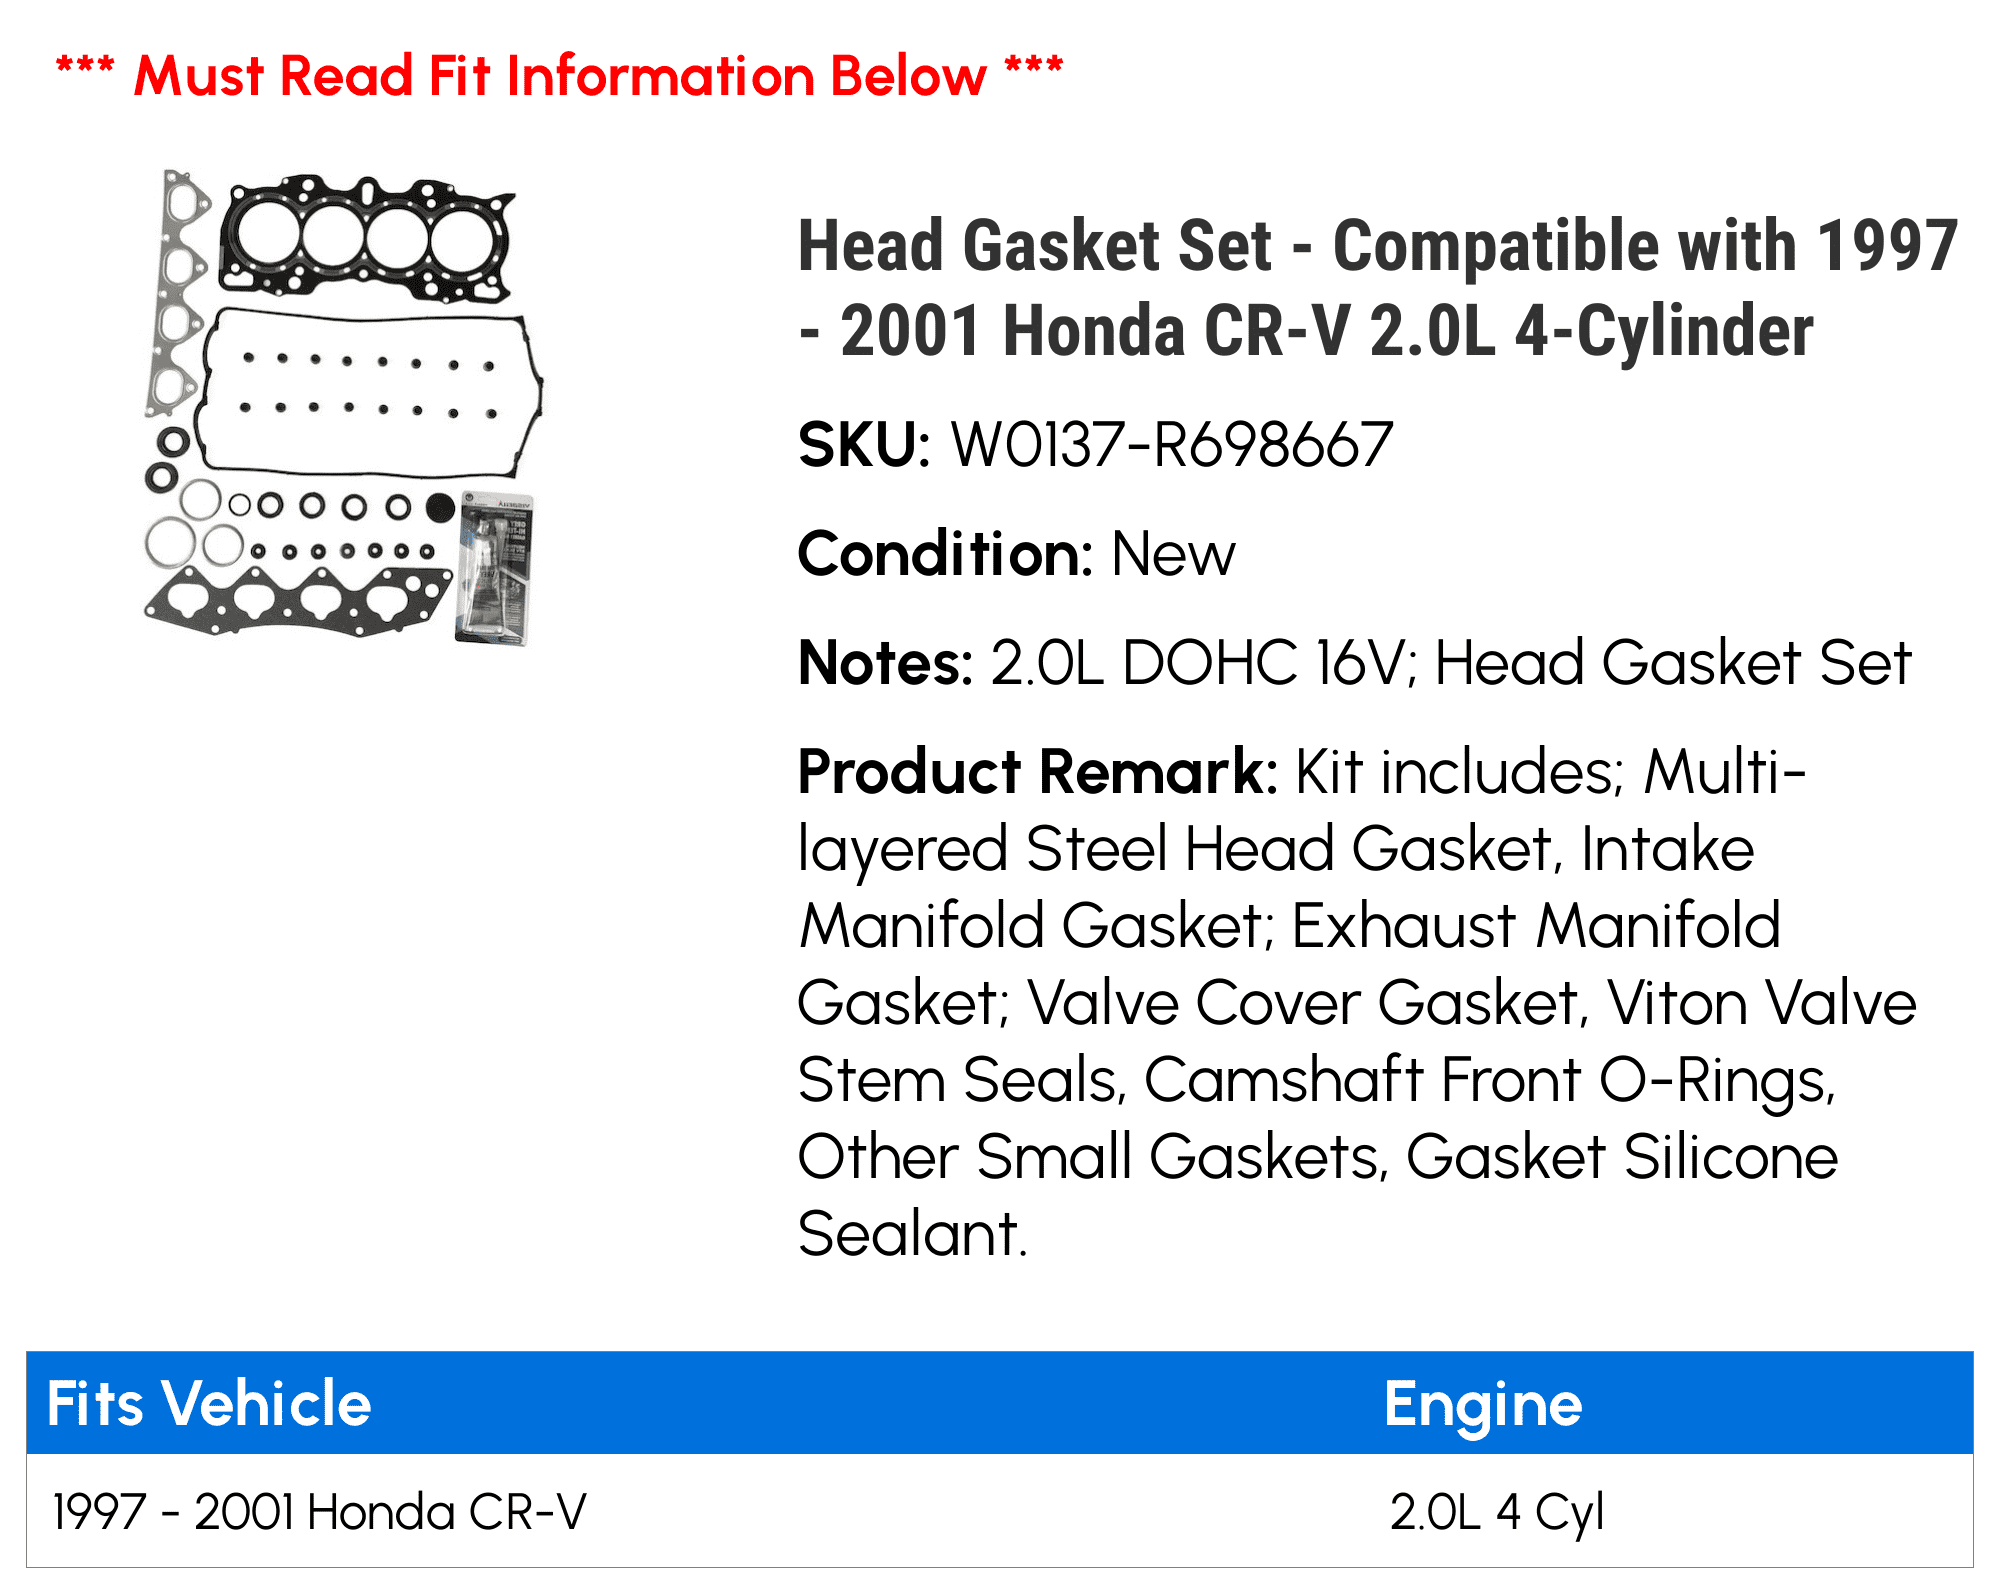 Head Gasket Set Compatible with 1997 2001 Honda CR-V 2.0L 4-Cylinder  1998 1999 2000